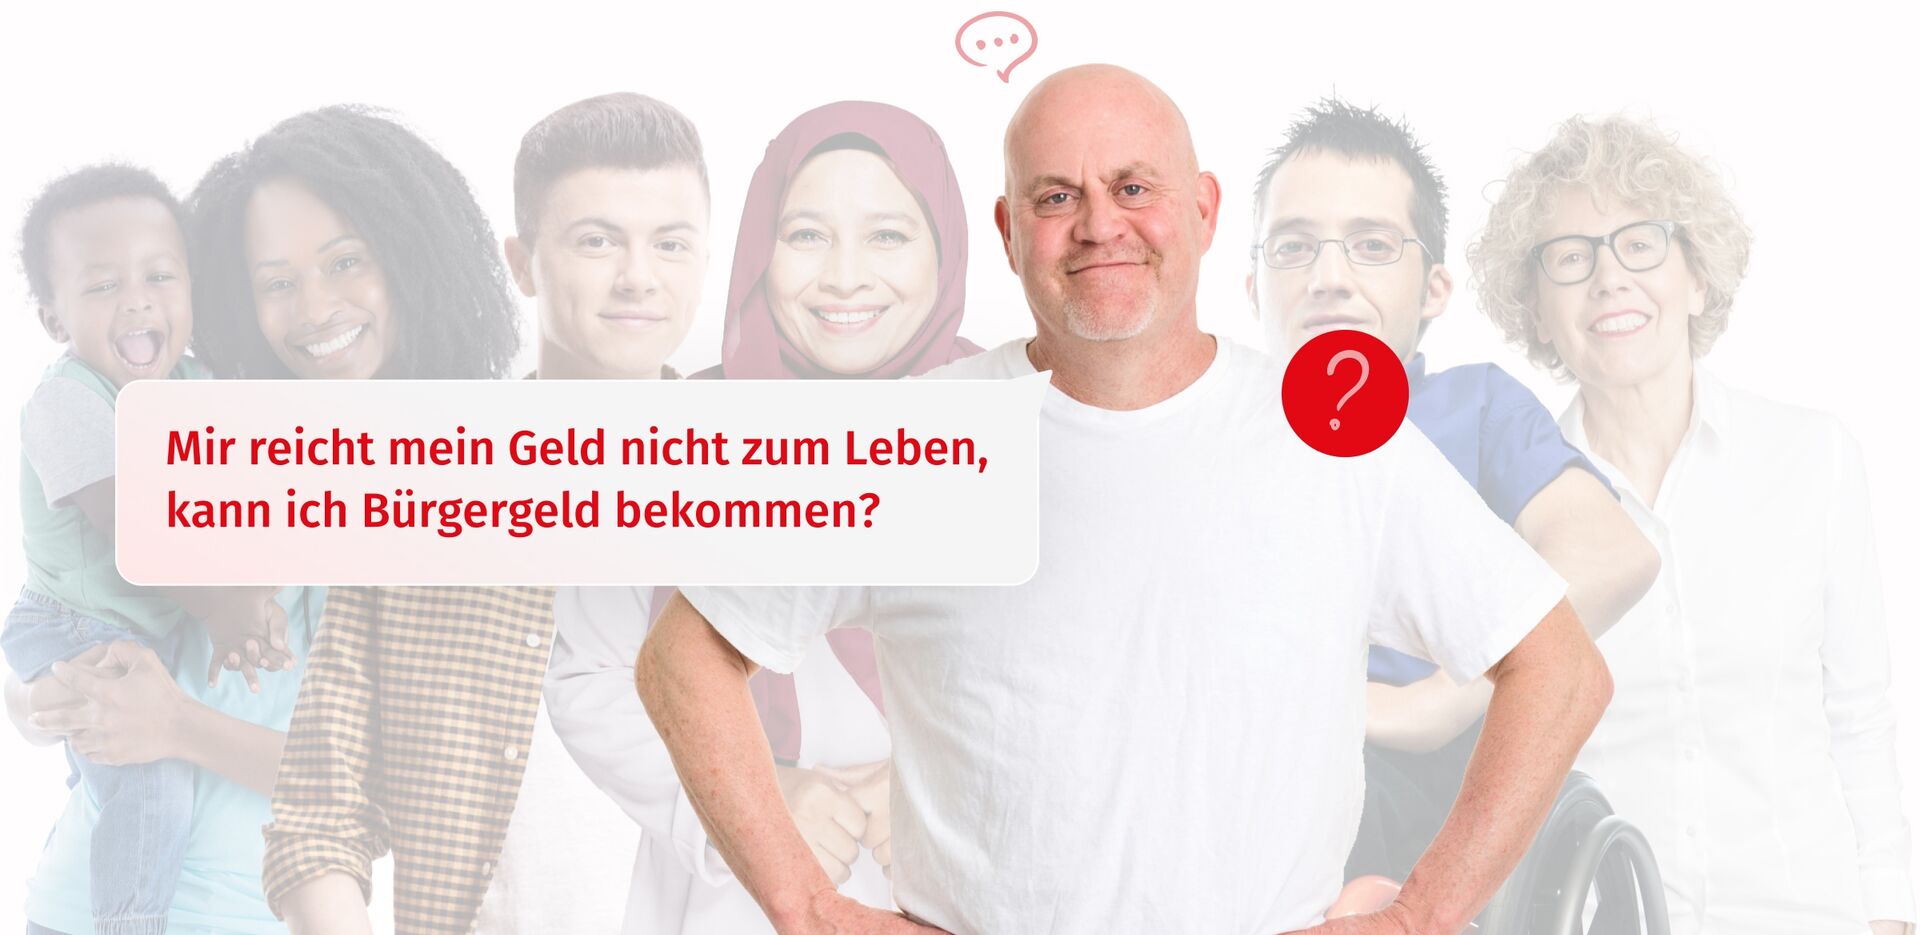 Eine diverse Zielgruppe von Menschen die vom Jobcenter Bremen unterstützt werden. Ein Mann, der stellvertretend für die Zielgruppe der Arbeitslosen steht, ist optisch hervorgehoben.